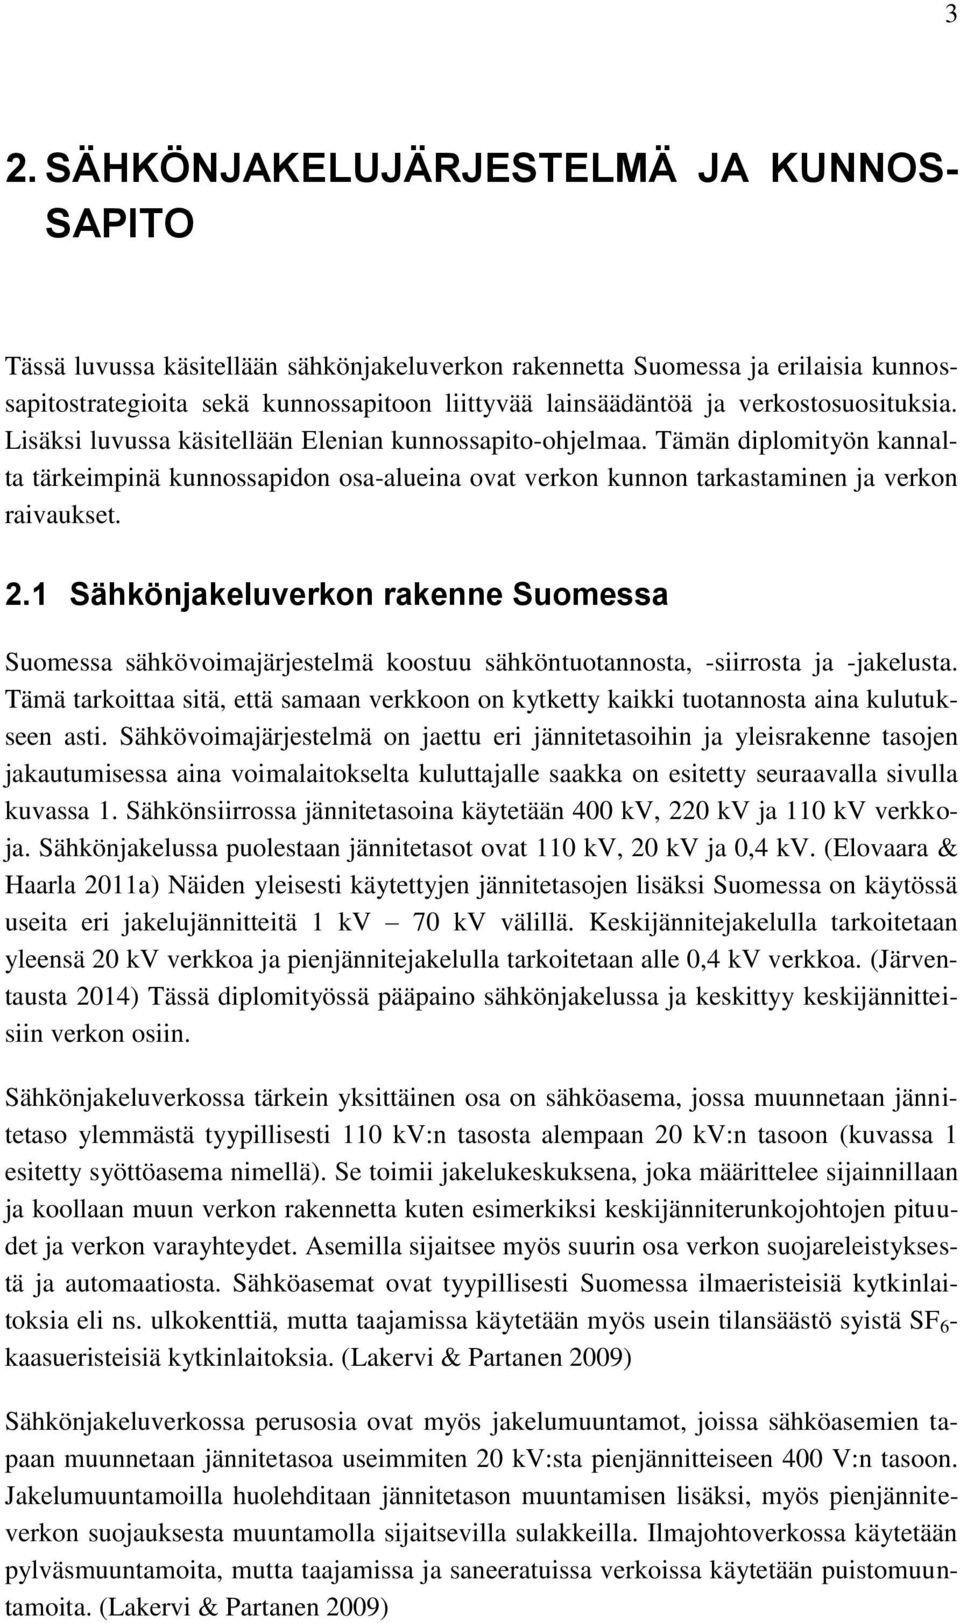 2.1 Sähkönjakeluverkon rakenne Suomessa Suomessa sähkövoimajärjestelmä koostuu sähköntuotannosta, -siirrosta ja -jakelusta.